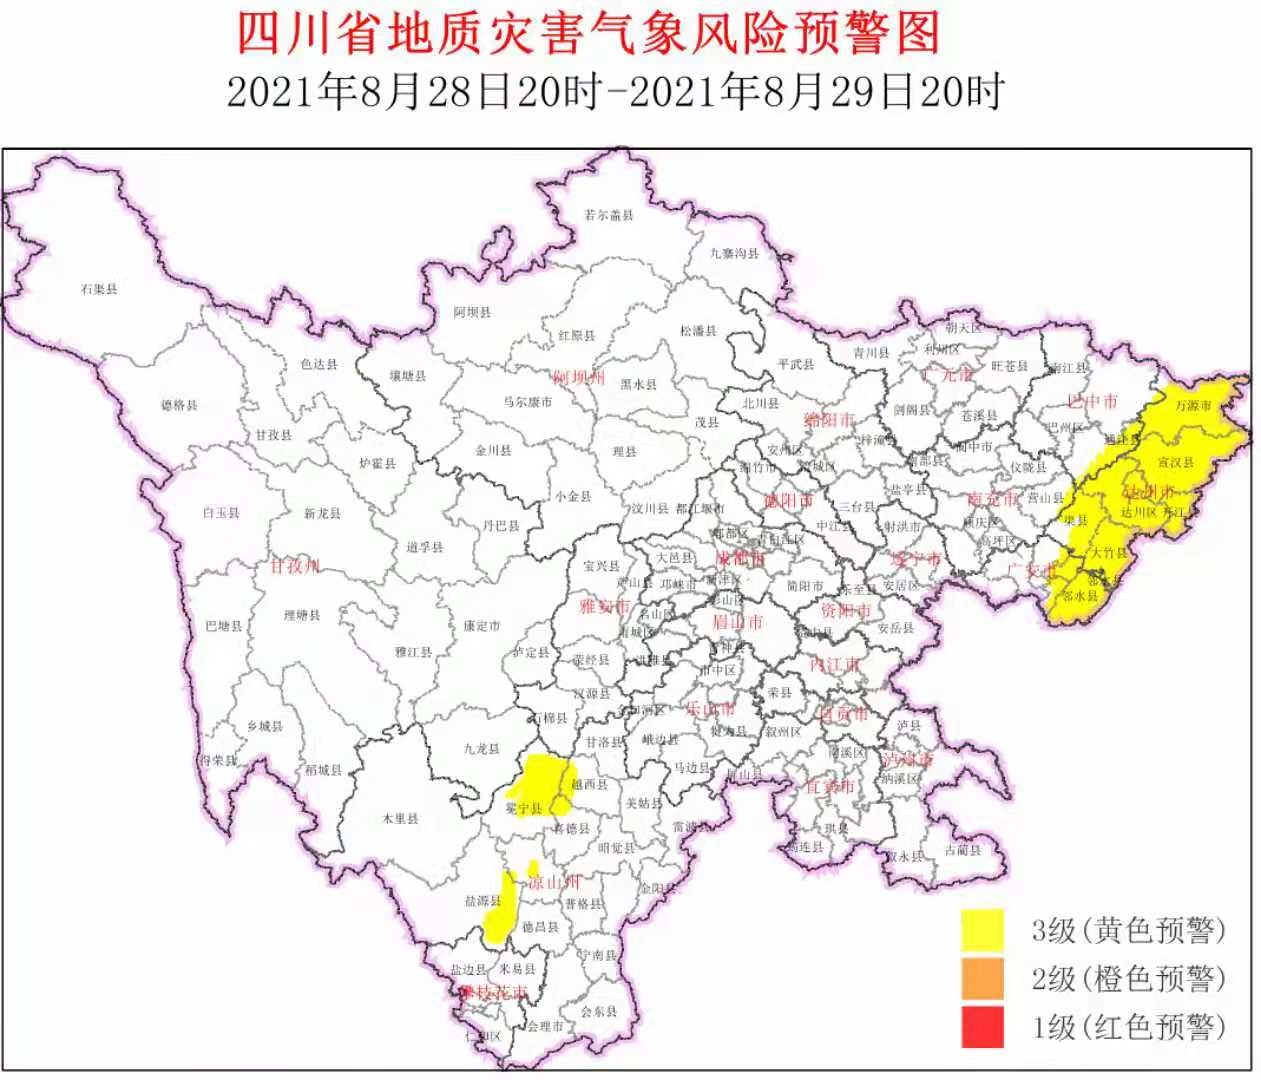 地质灾害预警范围扩大 四川向19个县市区“亮黄灯”